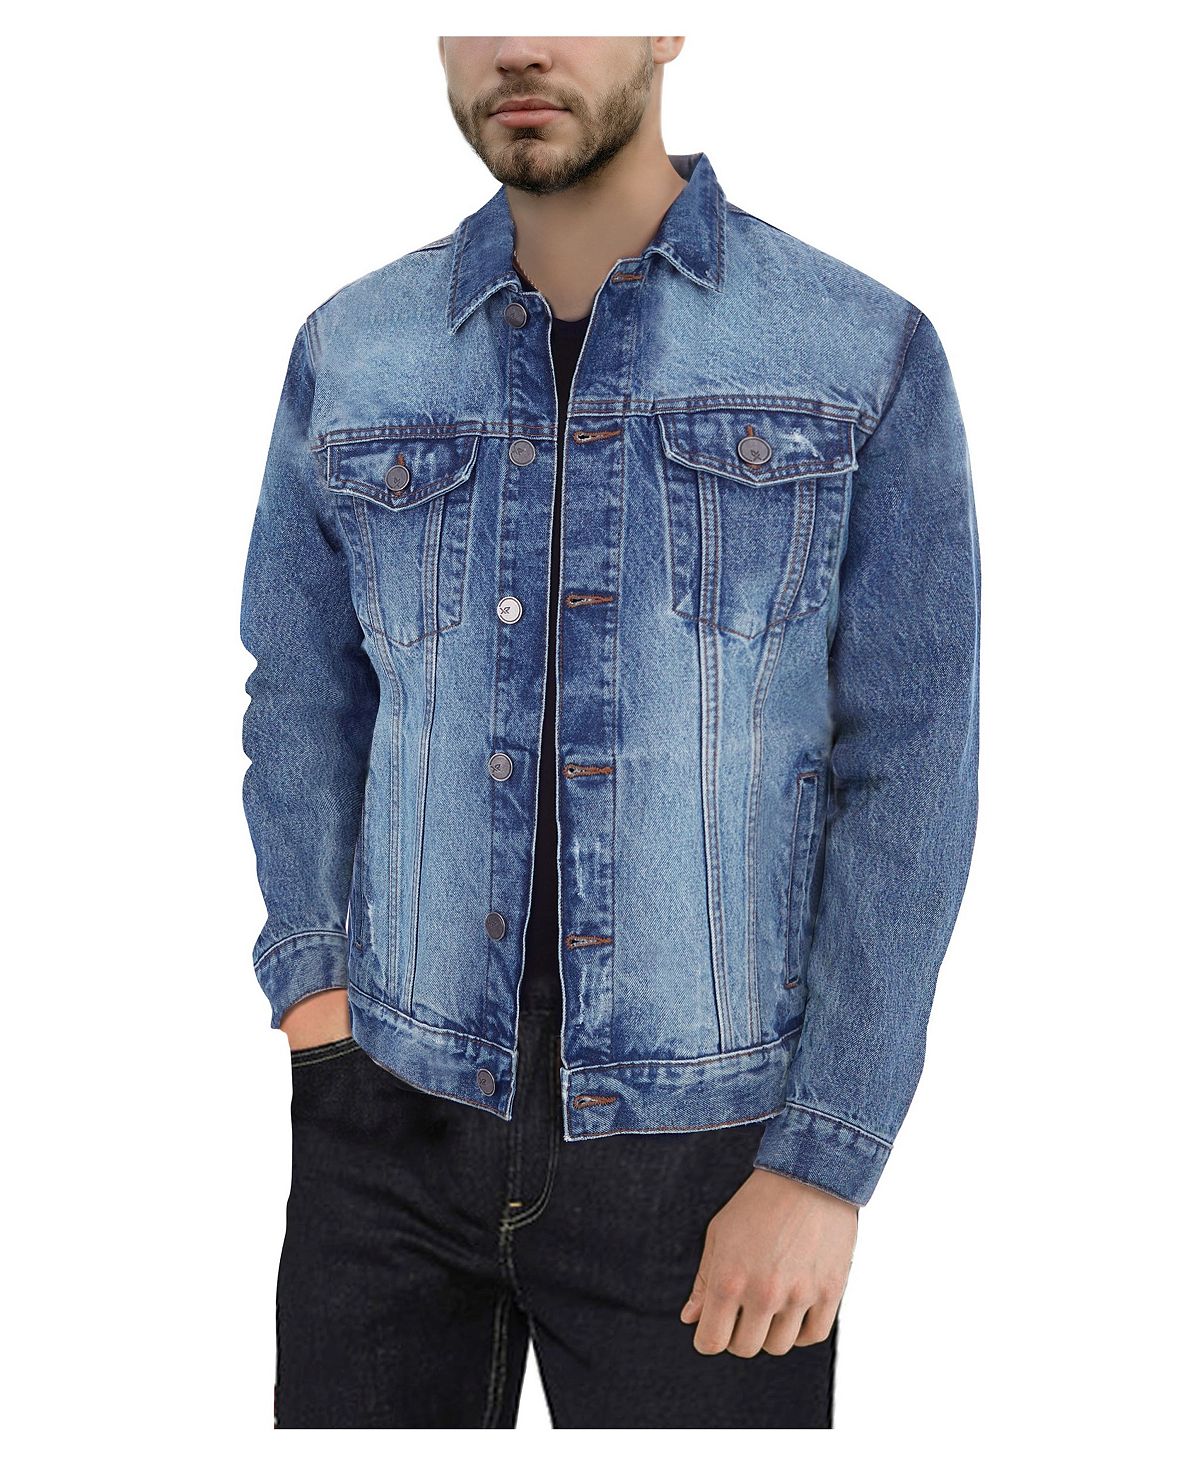 Мужская приталенная джинсовая куртка с эффектом потертости X-Ray, мульти новая джинсовая куртка мужская повседневная джинсовая куртка синяя приталенная ветровка весна осень